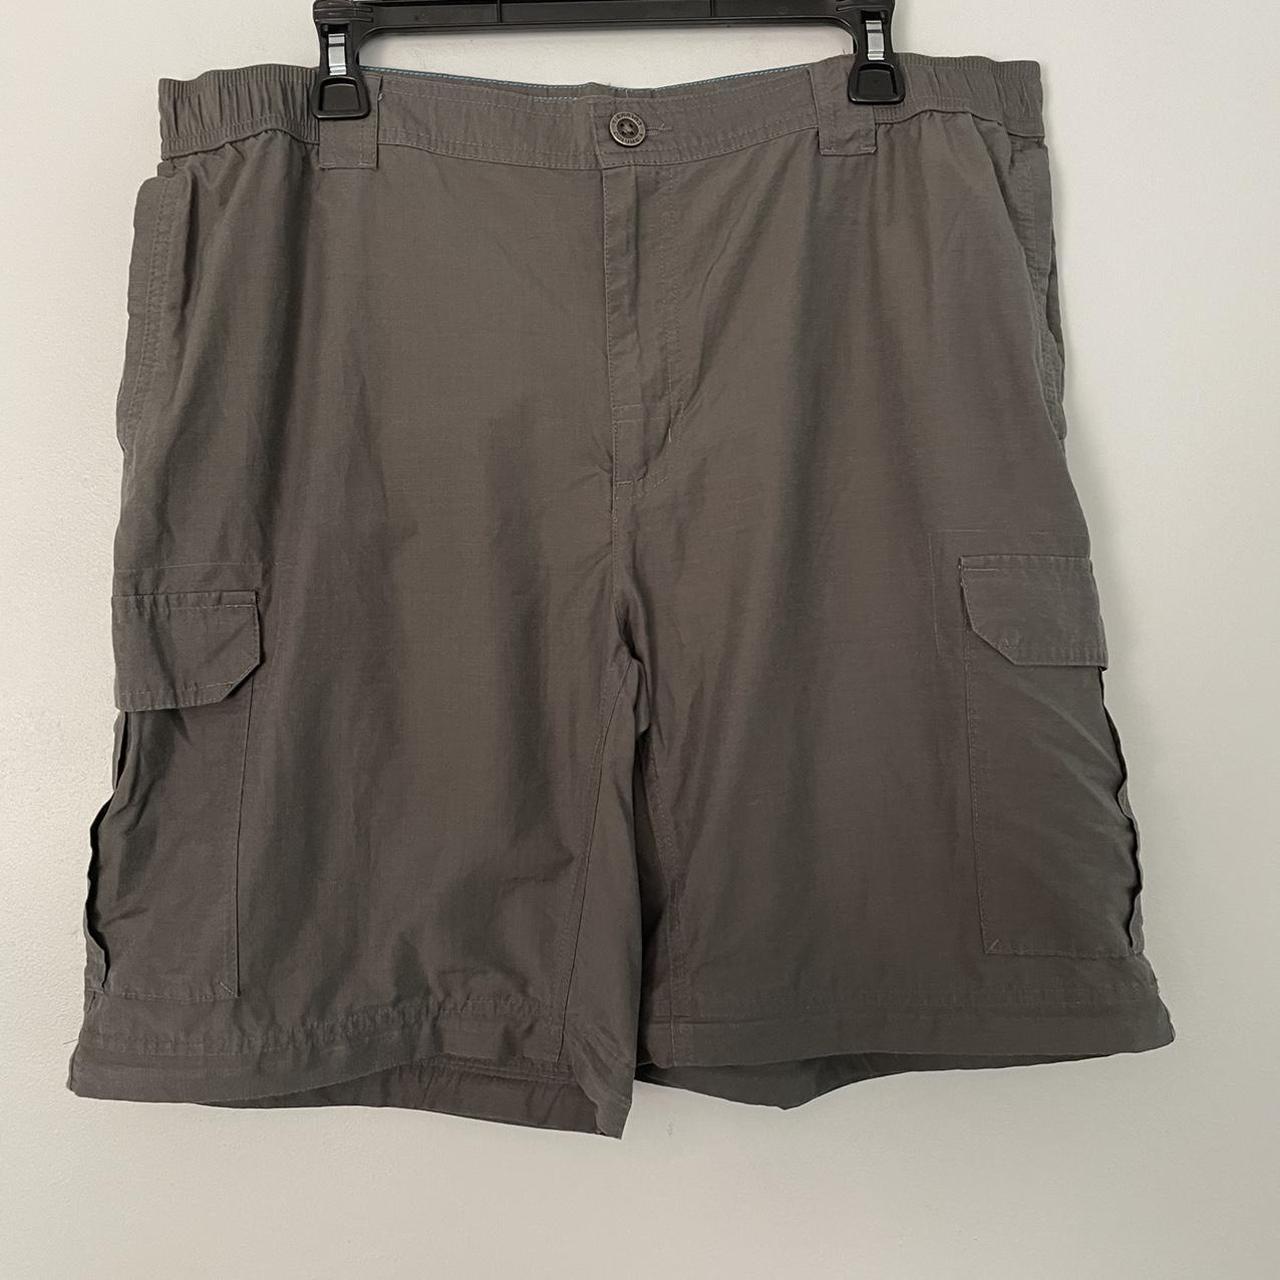 Product Image 3 - Columbia Mens Convertible Pants Shorts